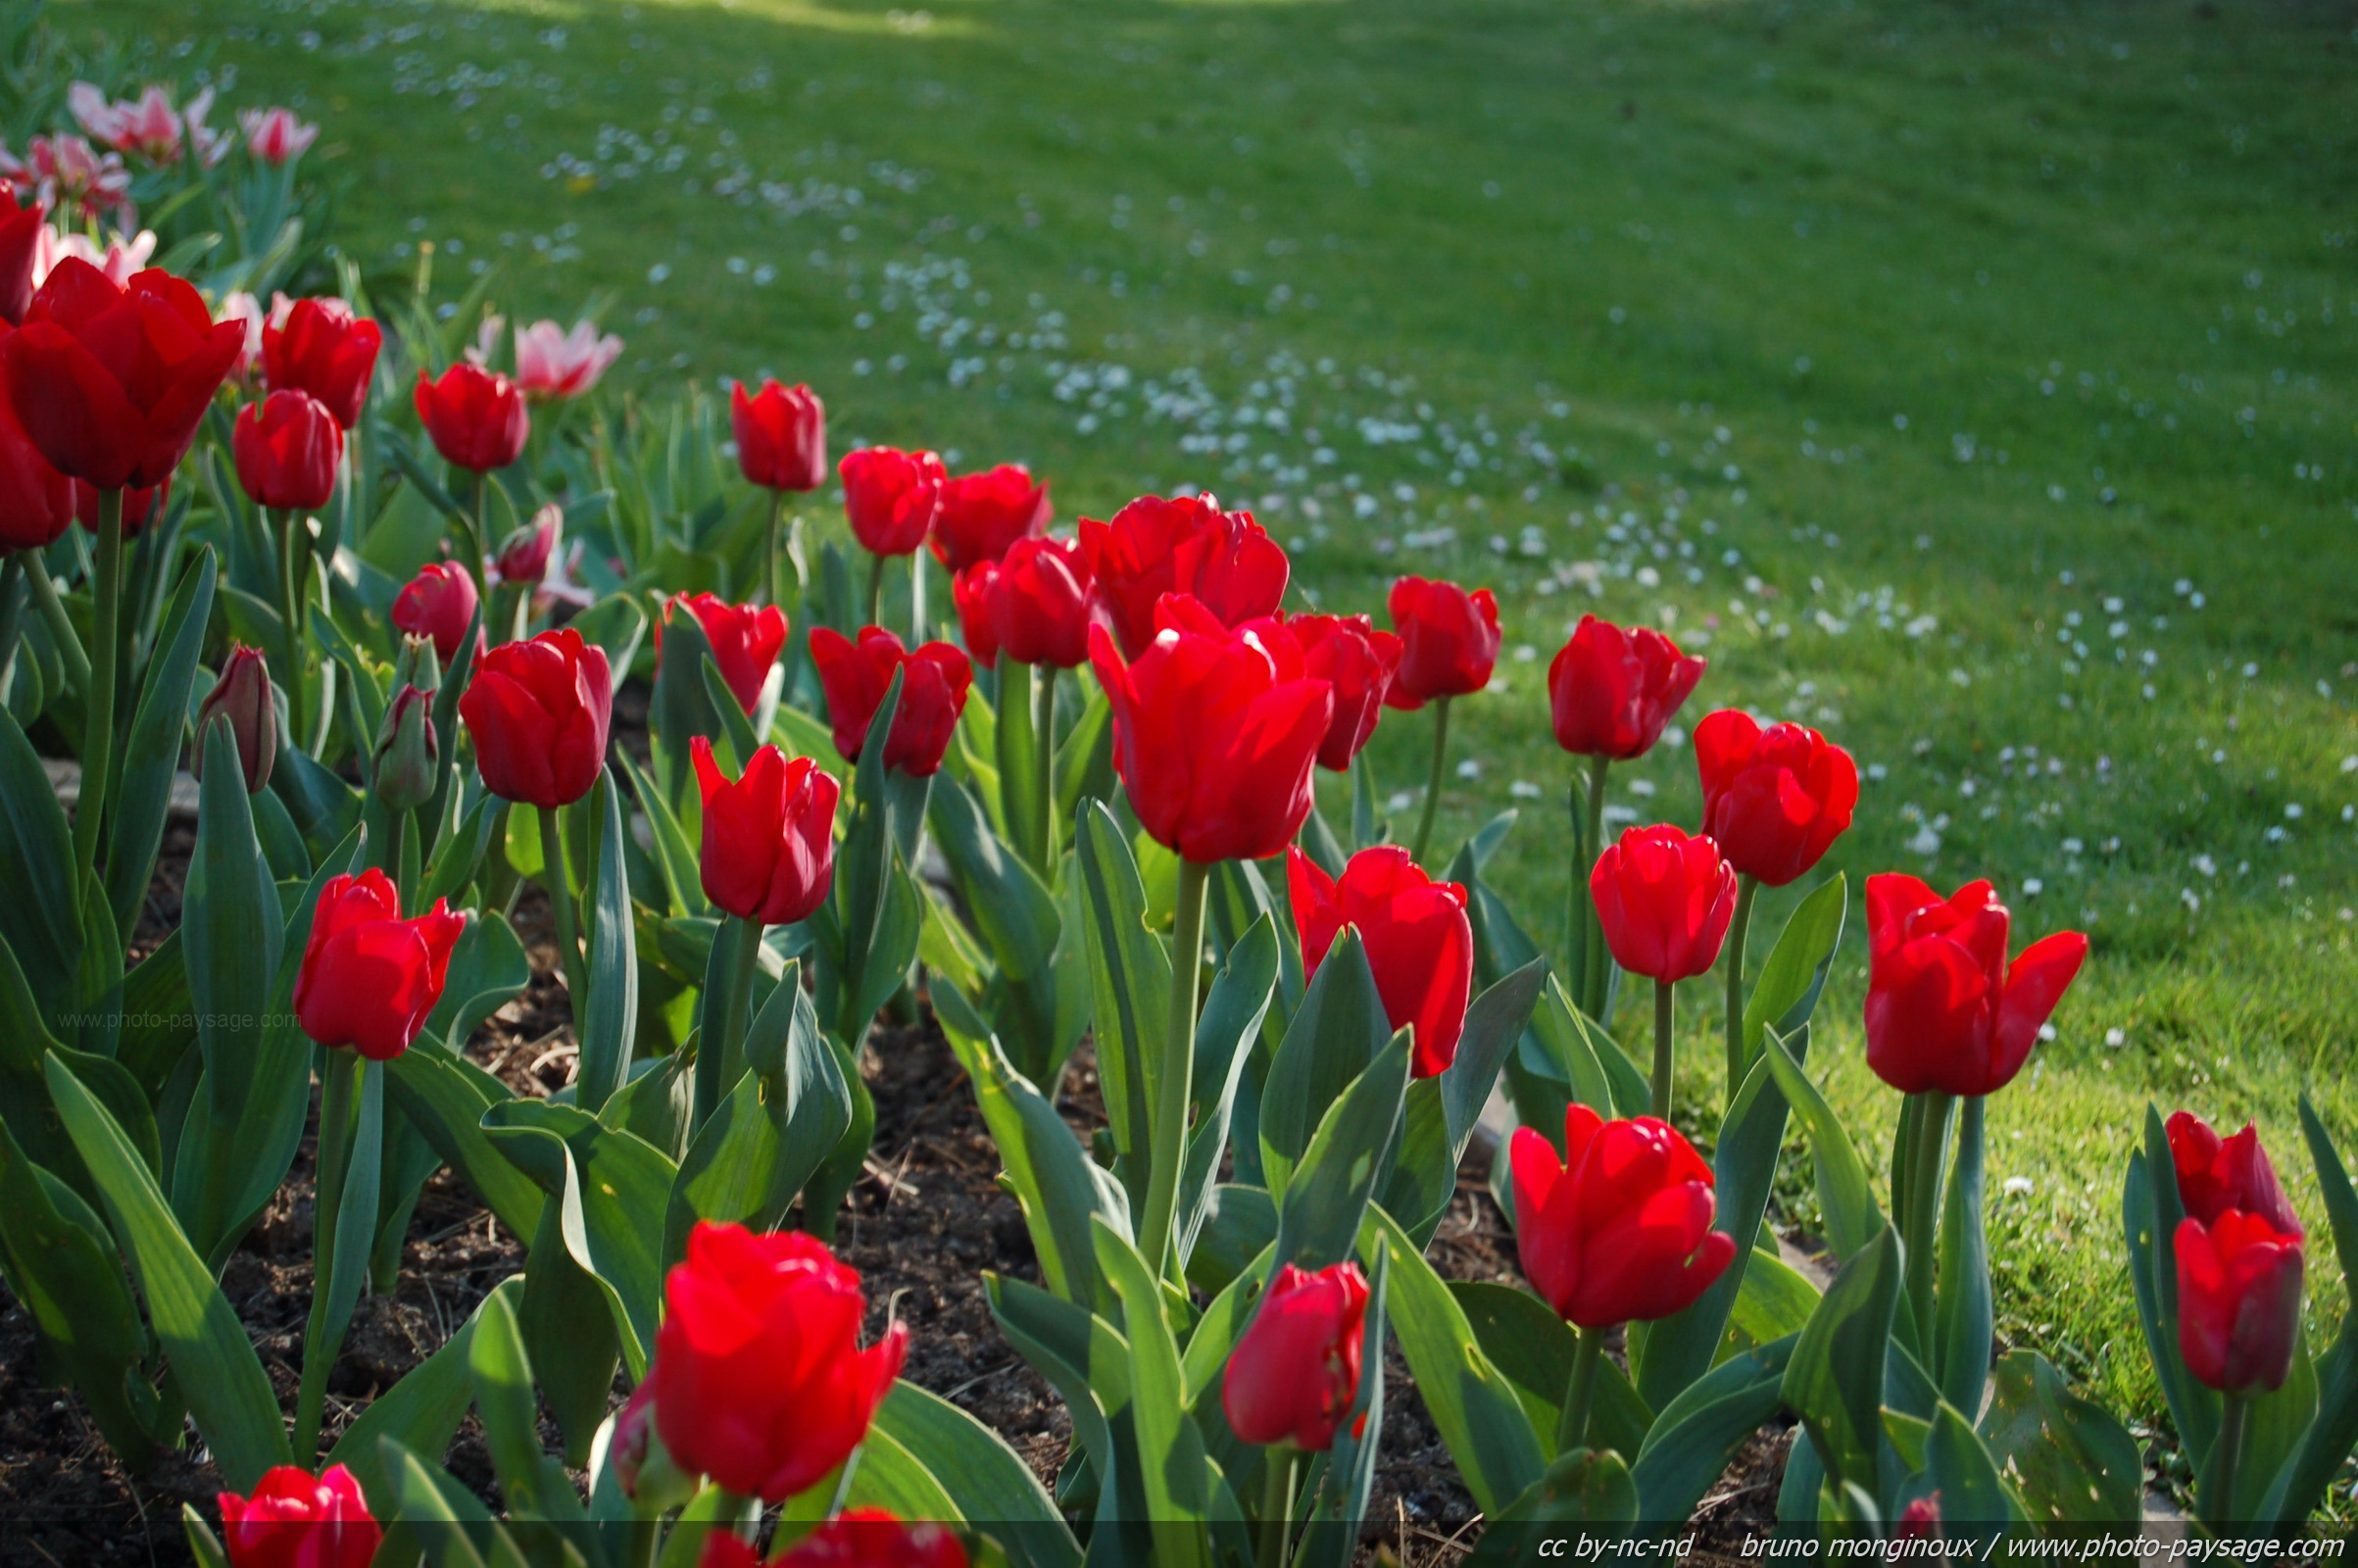 Les plus belles images de printemps - Tulipes rouges sur fond de pelouse -  Photo-Paysage.com Photo-Paysage.com